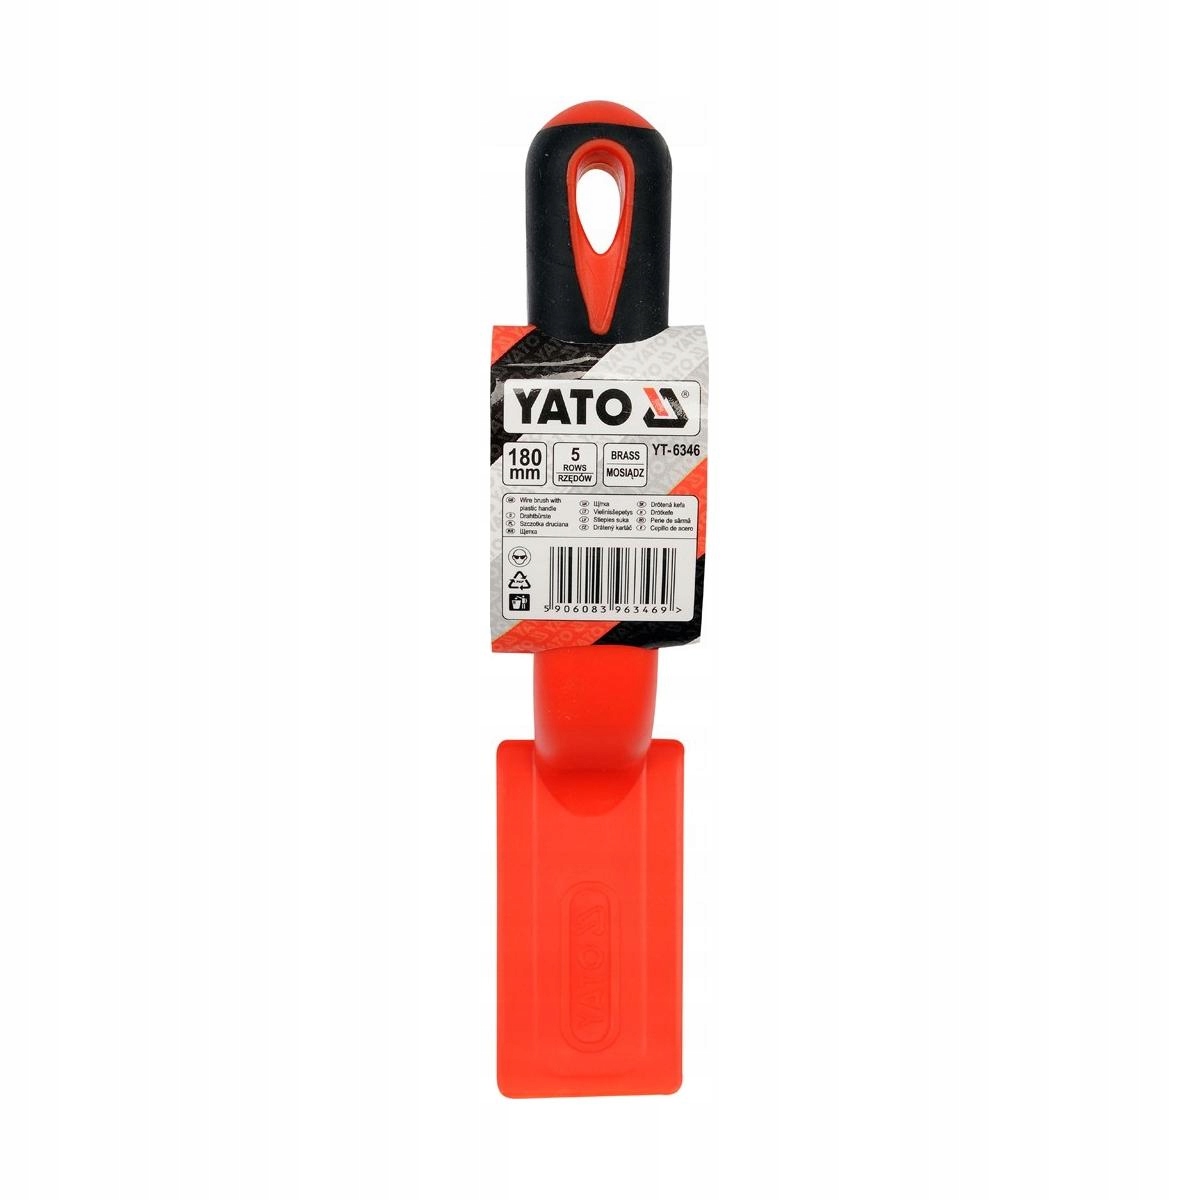 YATO-проволочная щетка латунная проволока 5 рядов бренд Yato